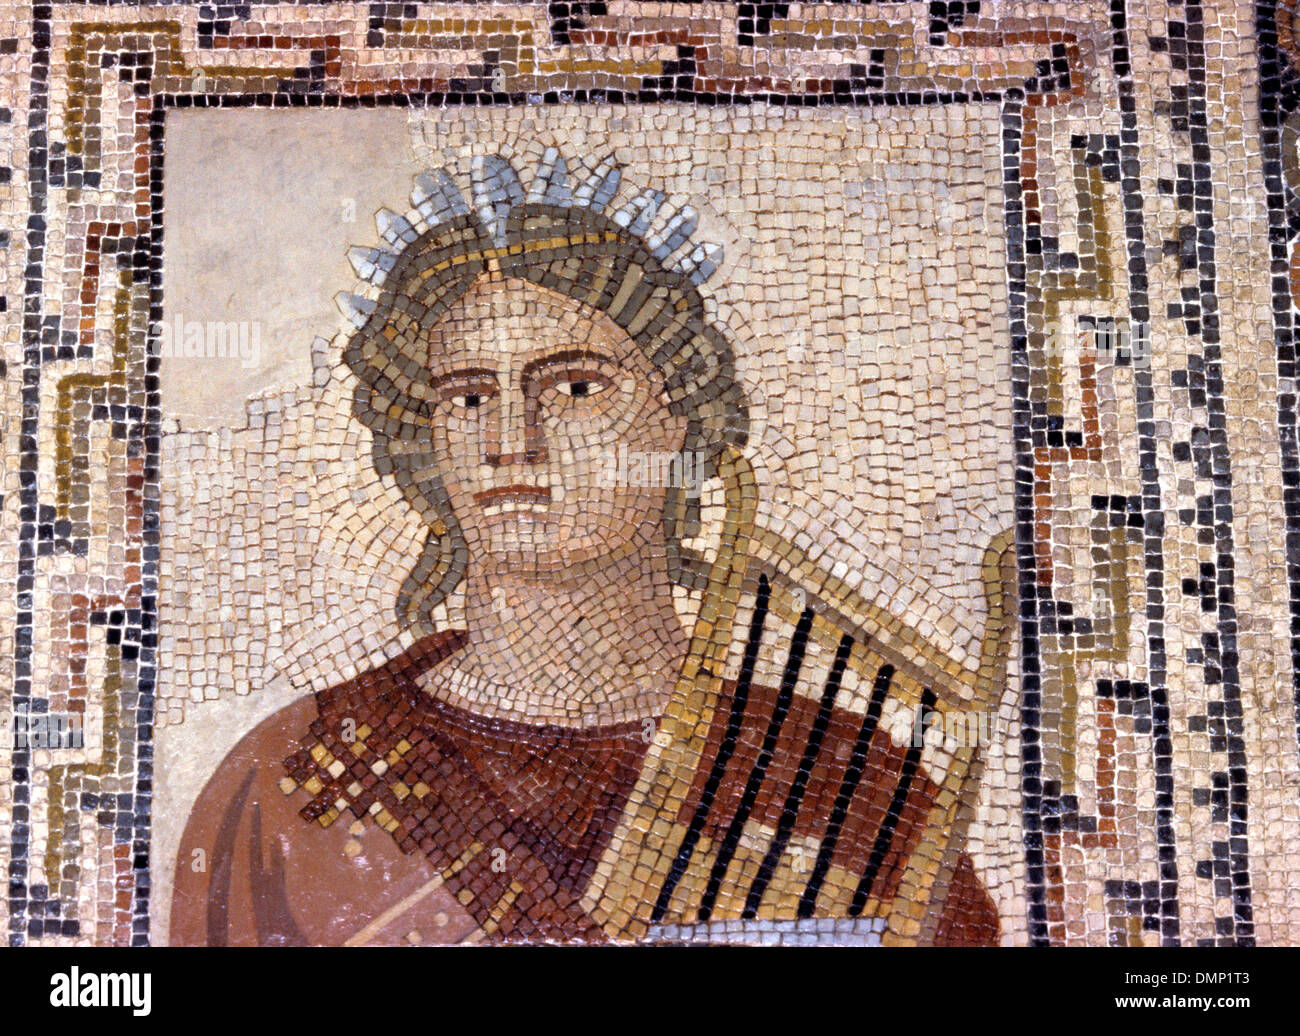 Periodo Romano-German. Mosaico. Terpsichore, musa della lirica, la poesia e la danza, portando cithara. Foto Stock